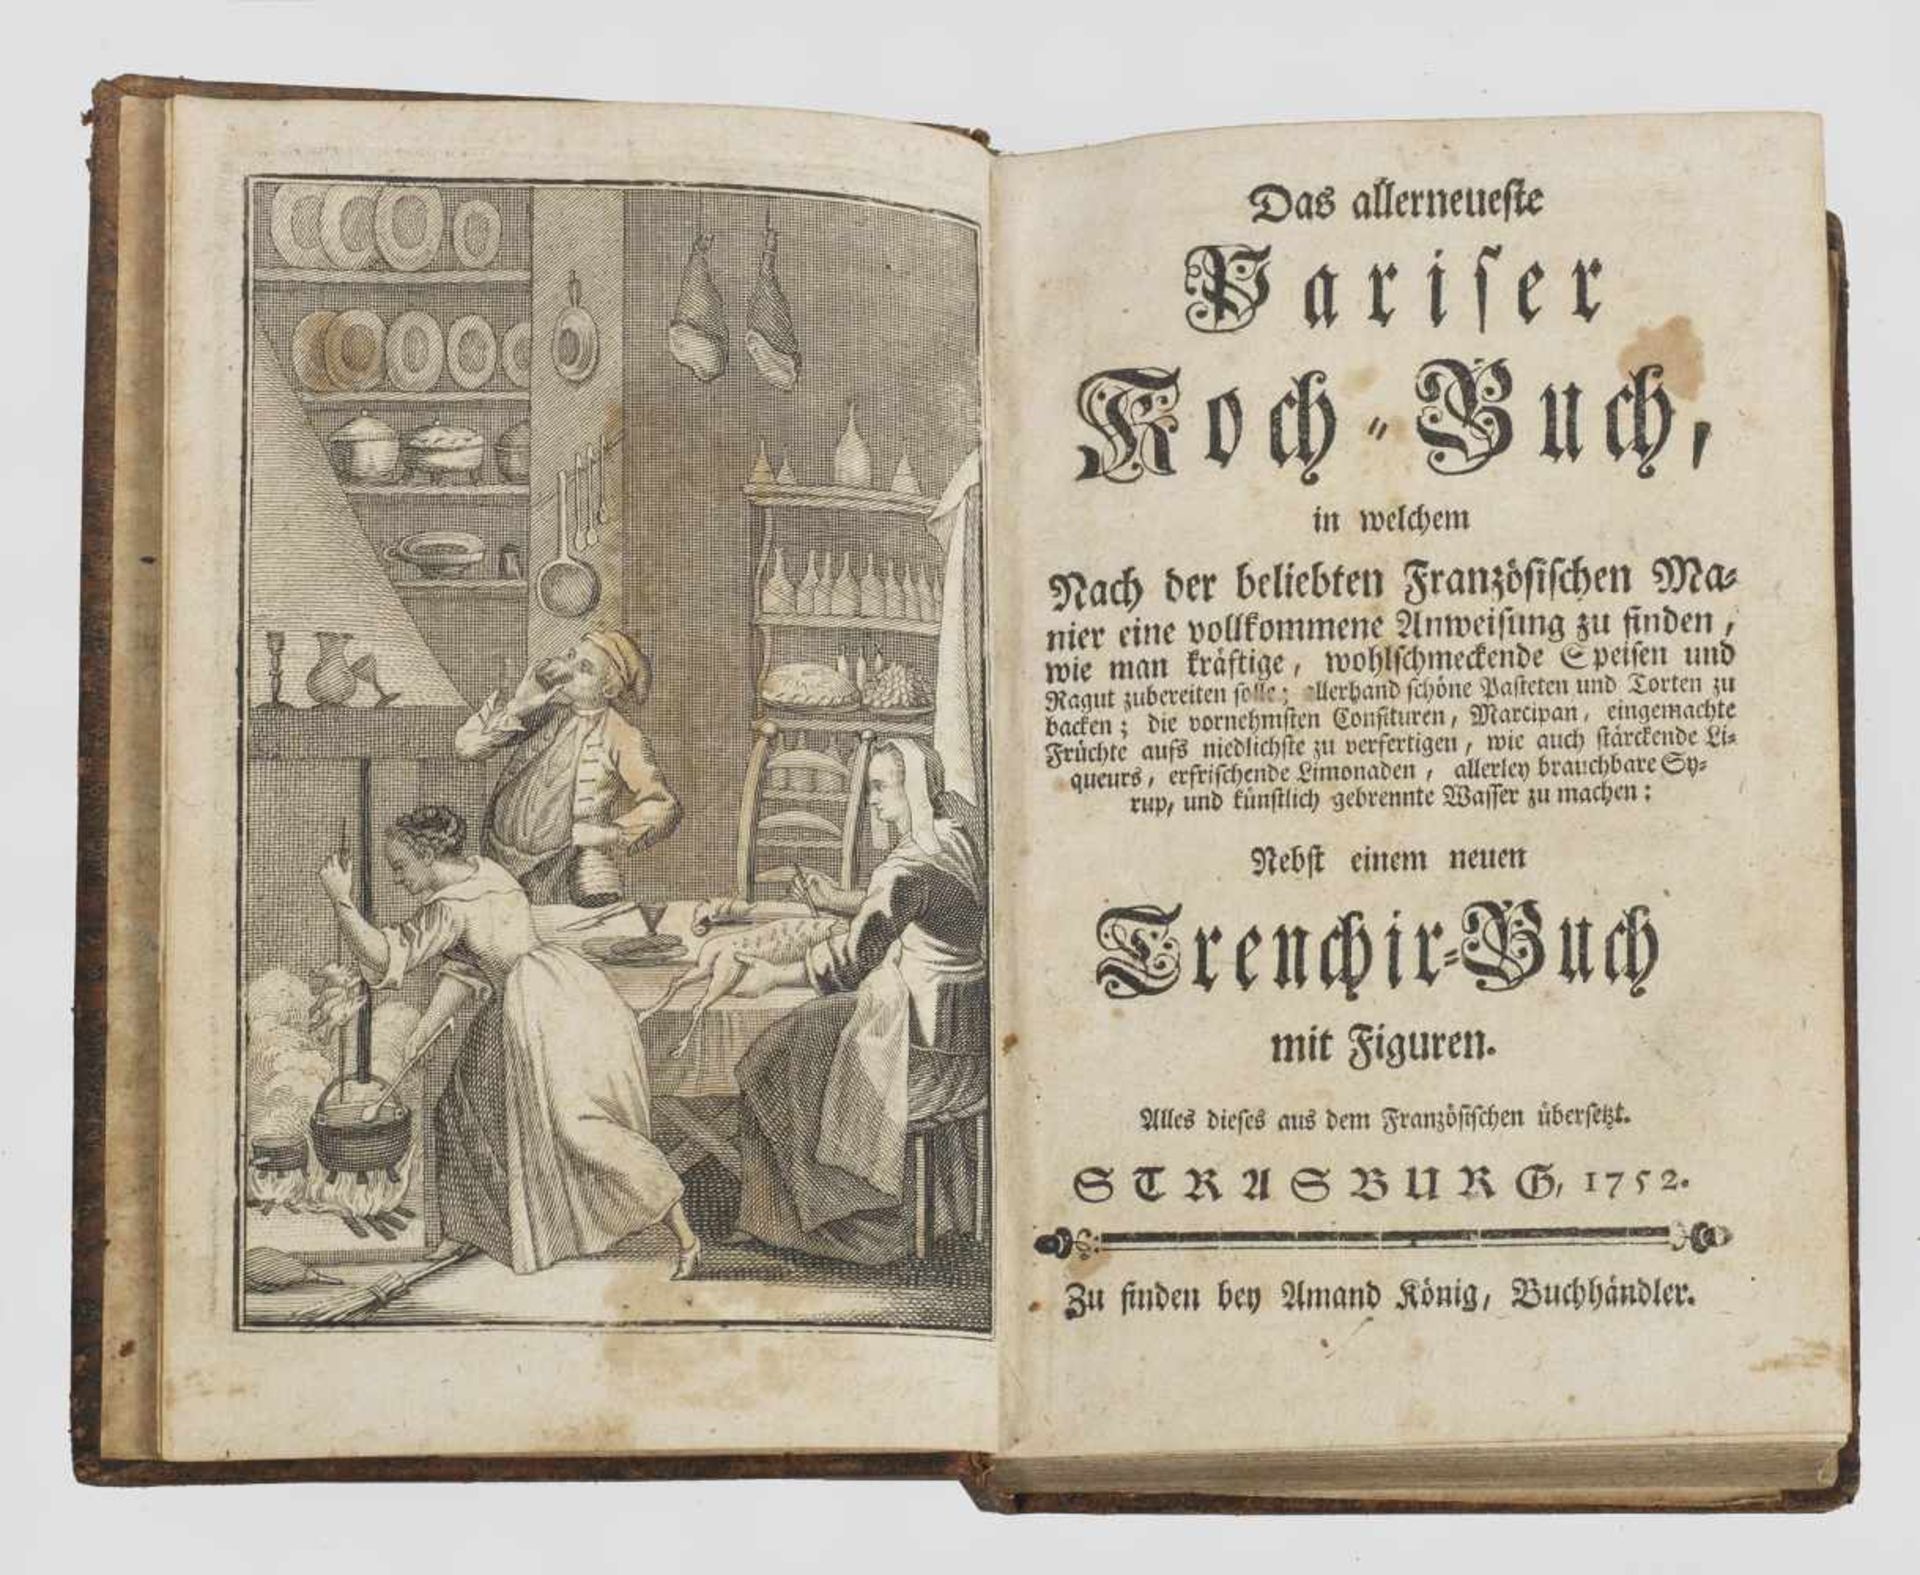 "Das allerneueste Pariser Koch-Buch (...) nebst"Das allerneueste Pariser Koch-Buch (...)